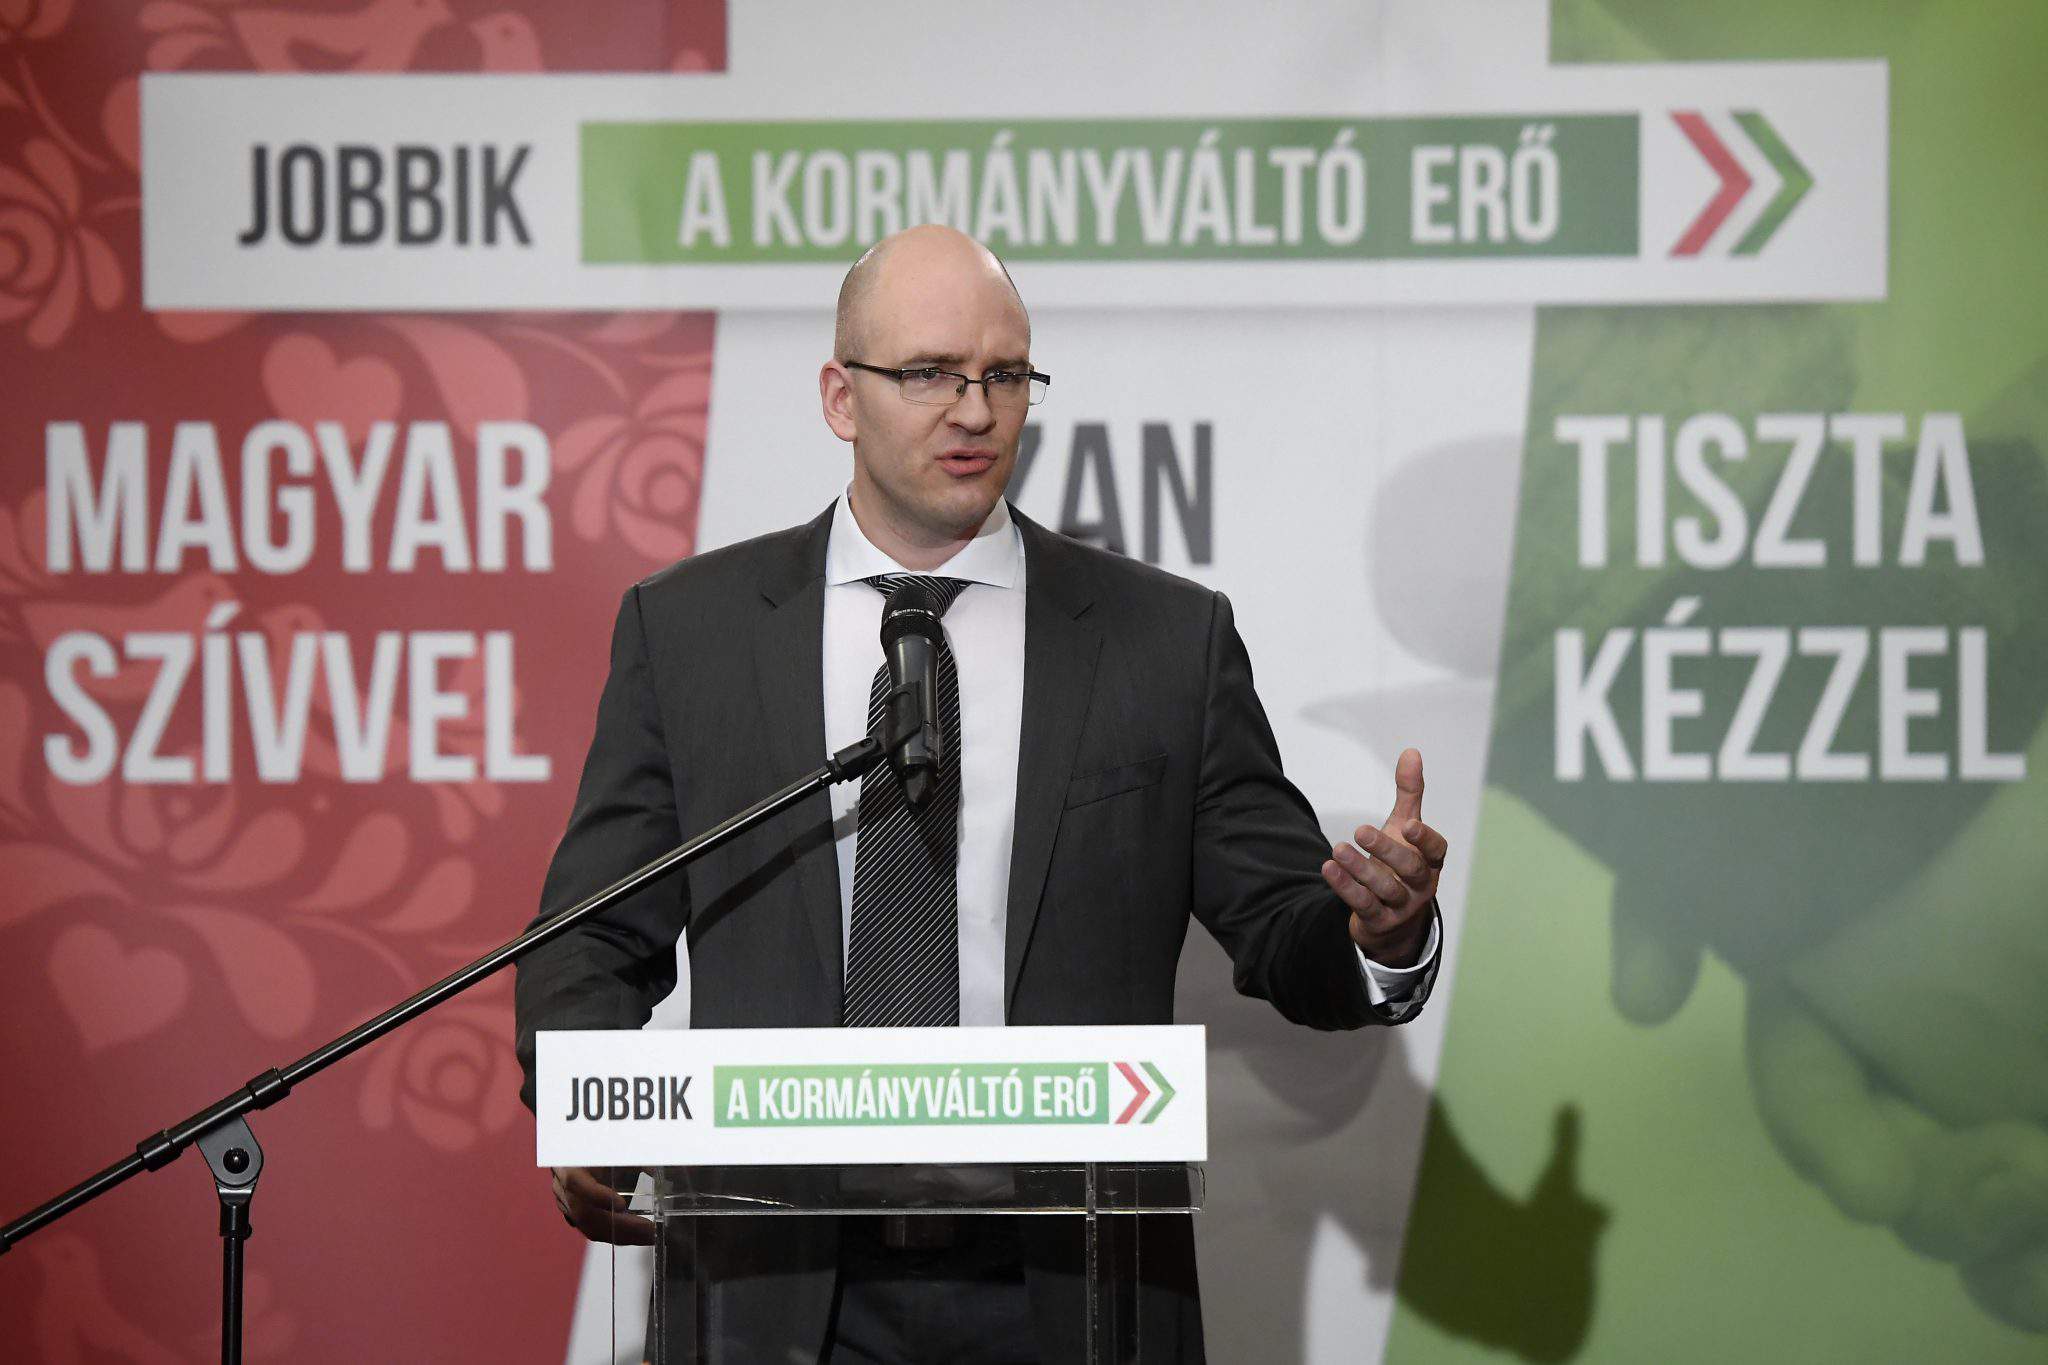 Wahl 2018 – Jobbik will Wahlergebnisse anfechten